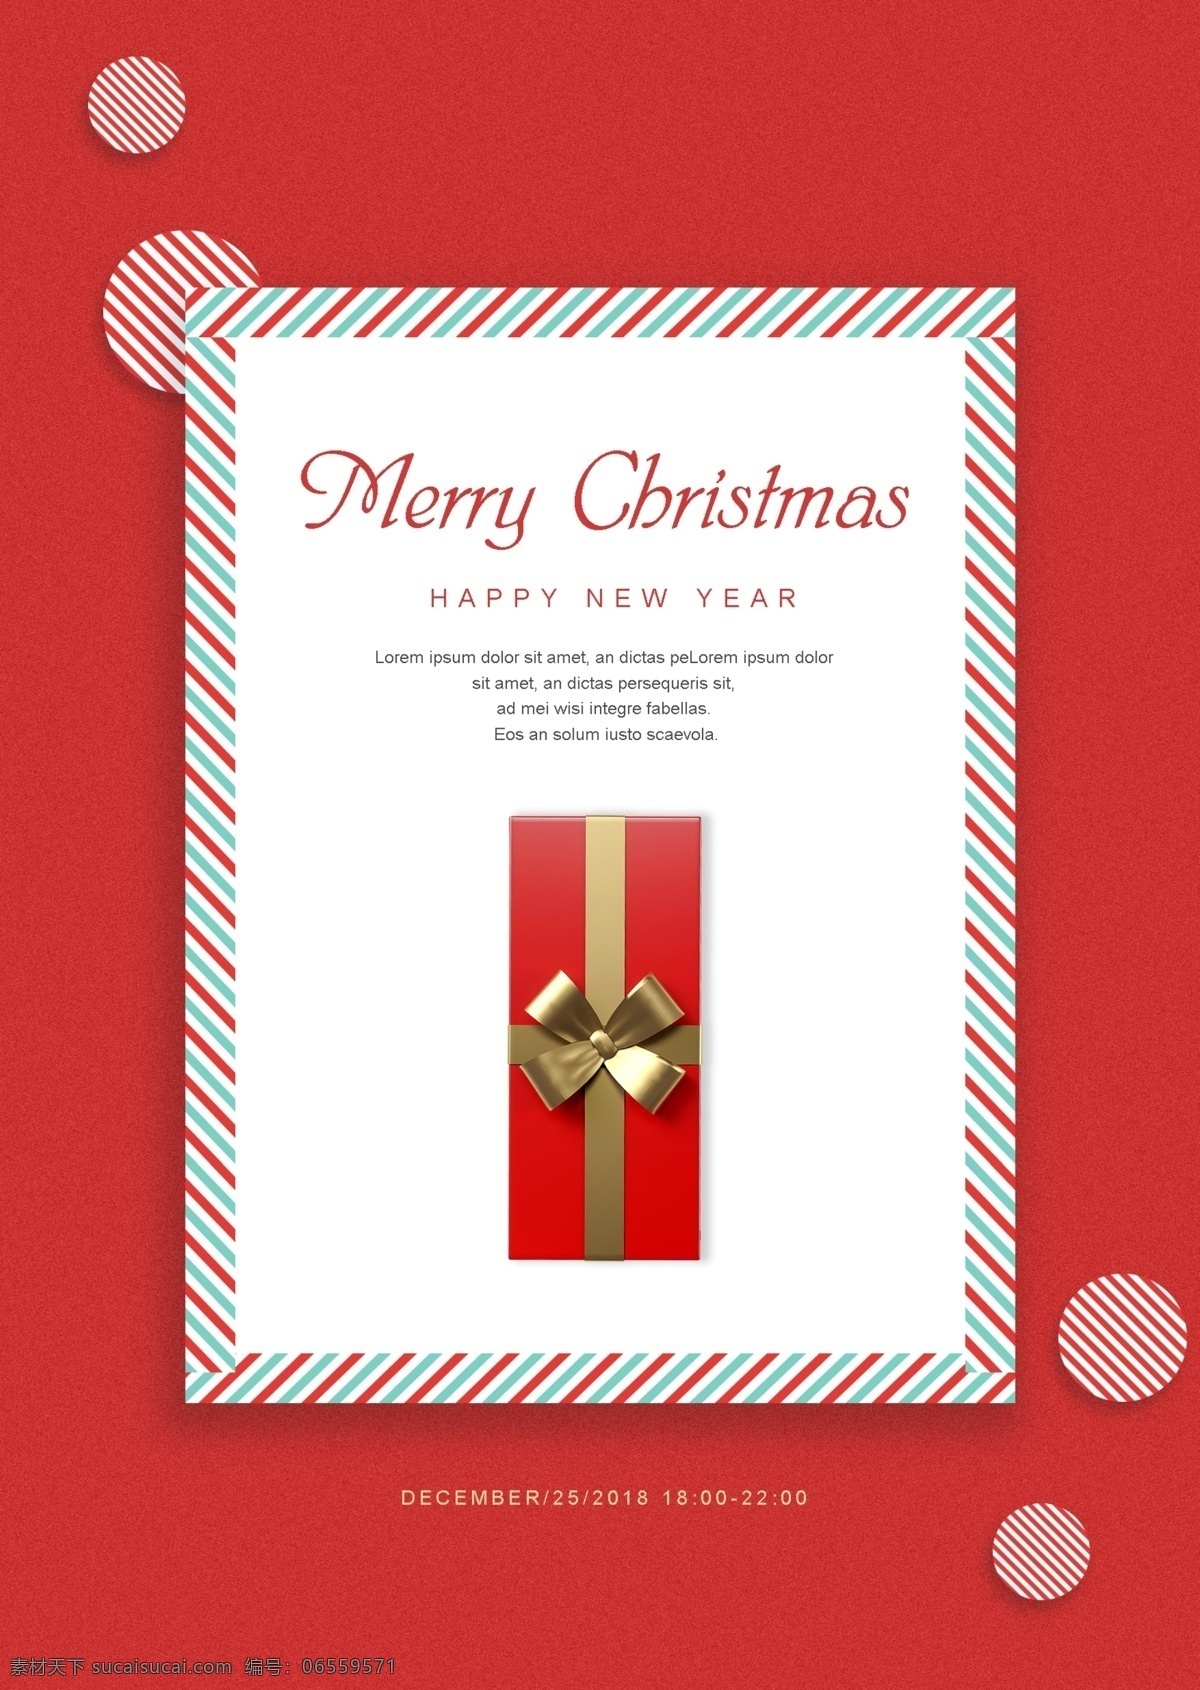 托盘 圣诞快乐 圣诞贺卡 之间 红色 背景 肝脏药物 可爱 一个故事 一个 礼盒 金 圣诞节 装饰 元素 白色 圆形元素 原来 斜纹